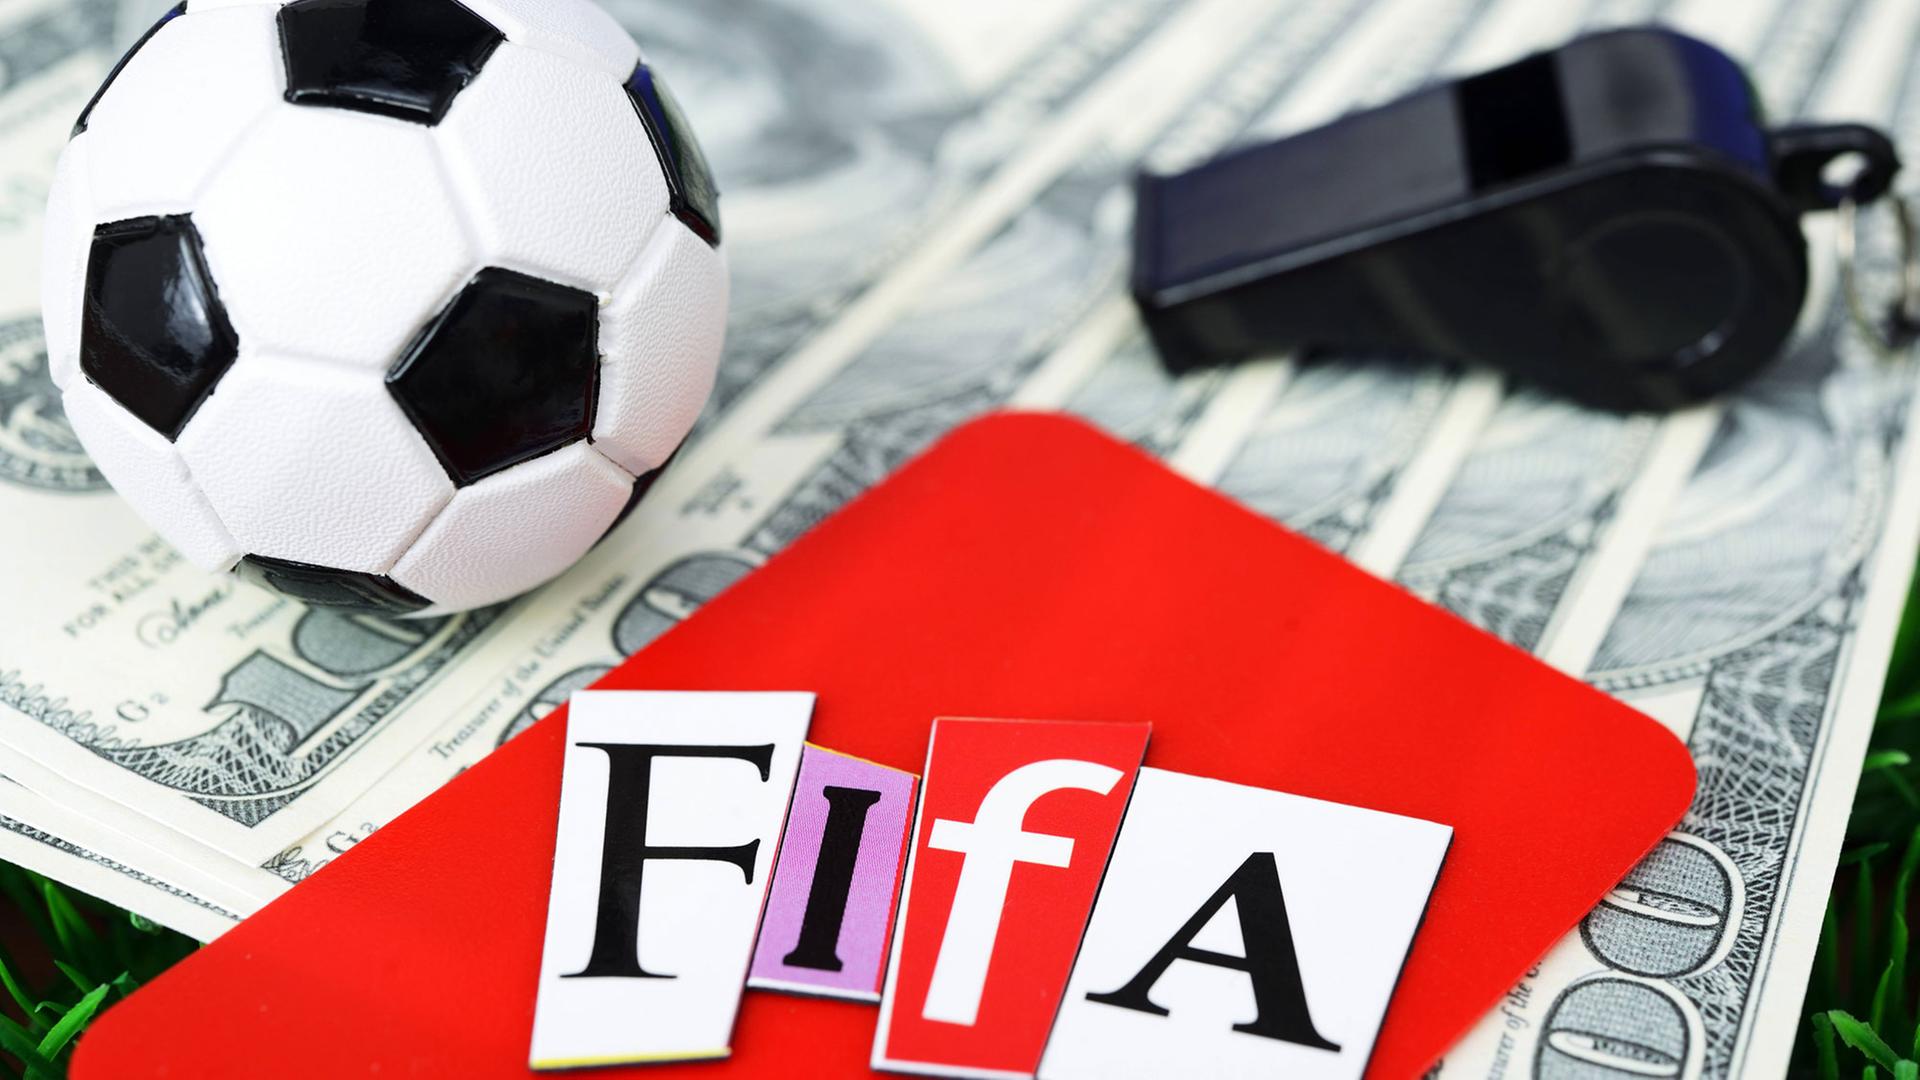 Ein Miniaturfußball auf Dollarscheinen neben einer schwarzen Trillerpfeife und einer Roten Karte mit Fifa-Schriftzug